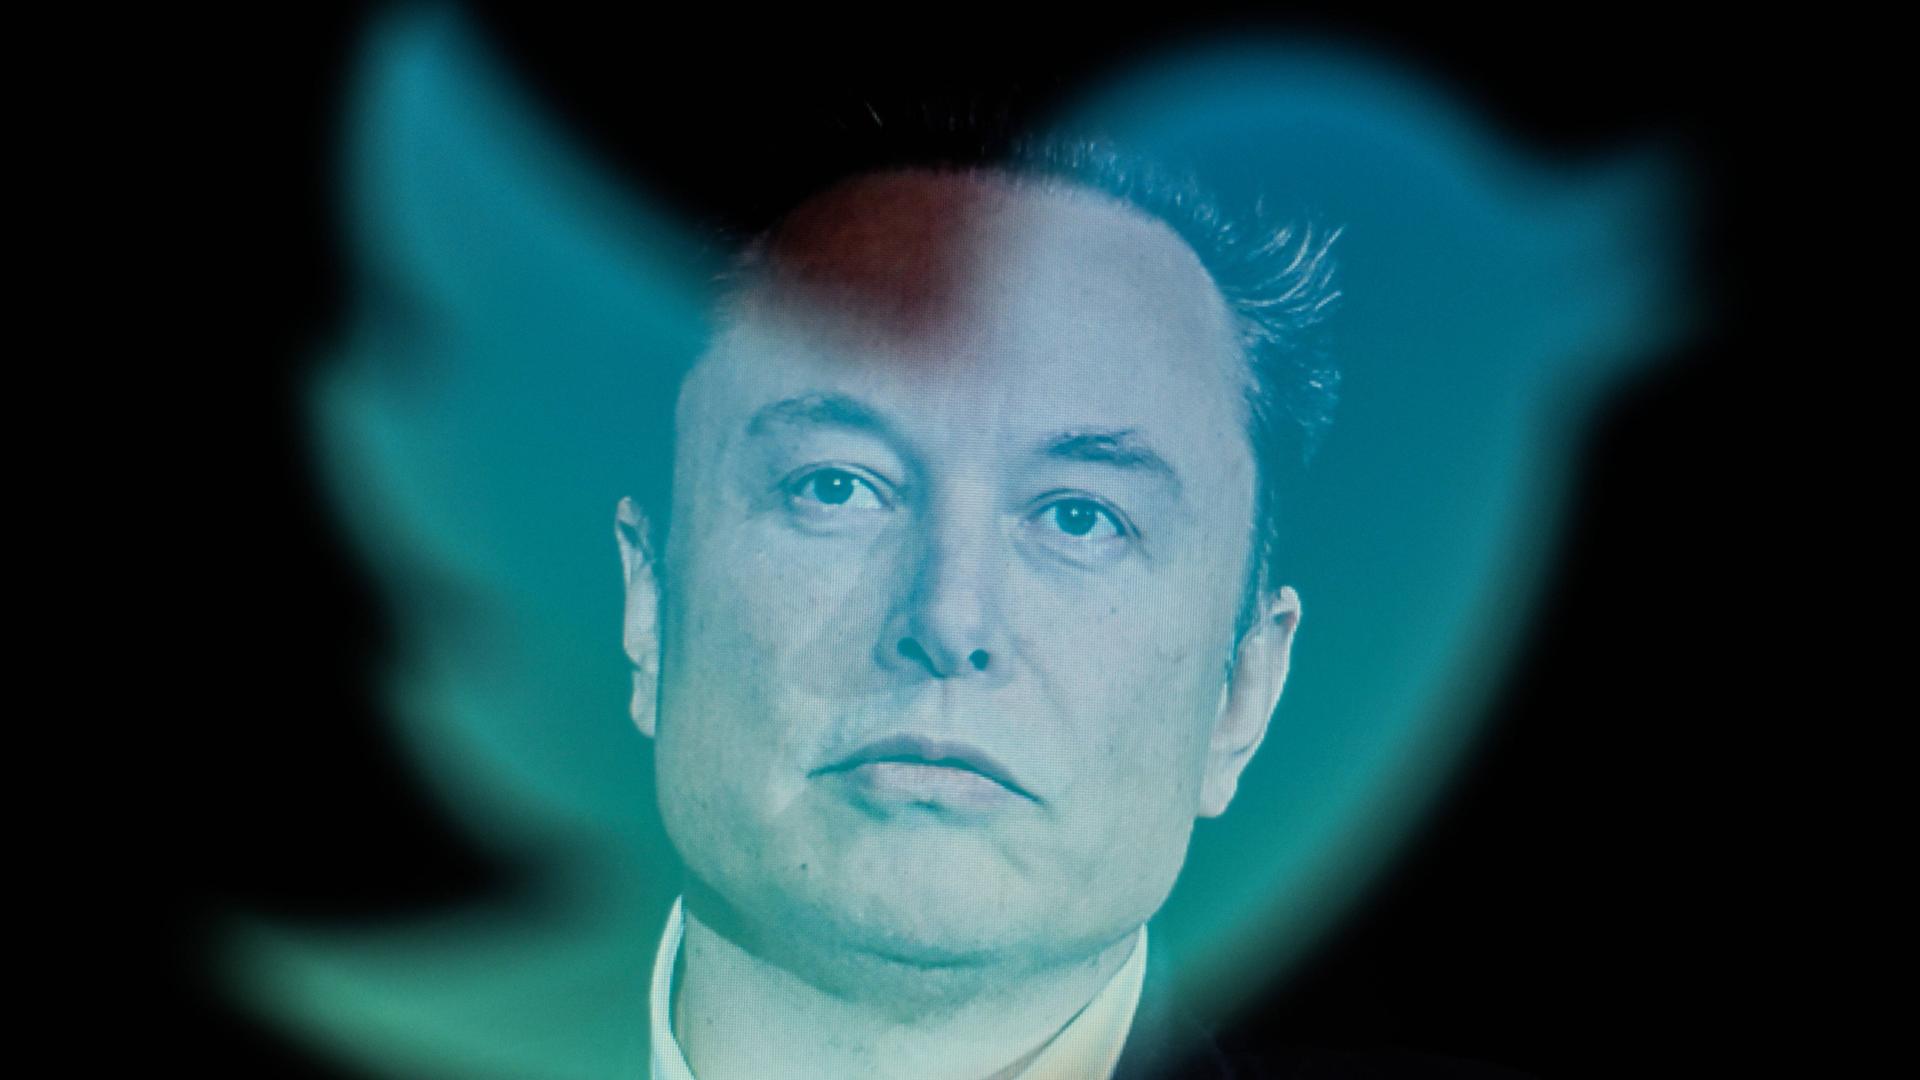 Das Gesicht von Twitter-CEO Elon Musk hinter dem Logo von Twitter.